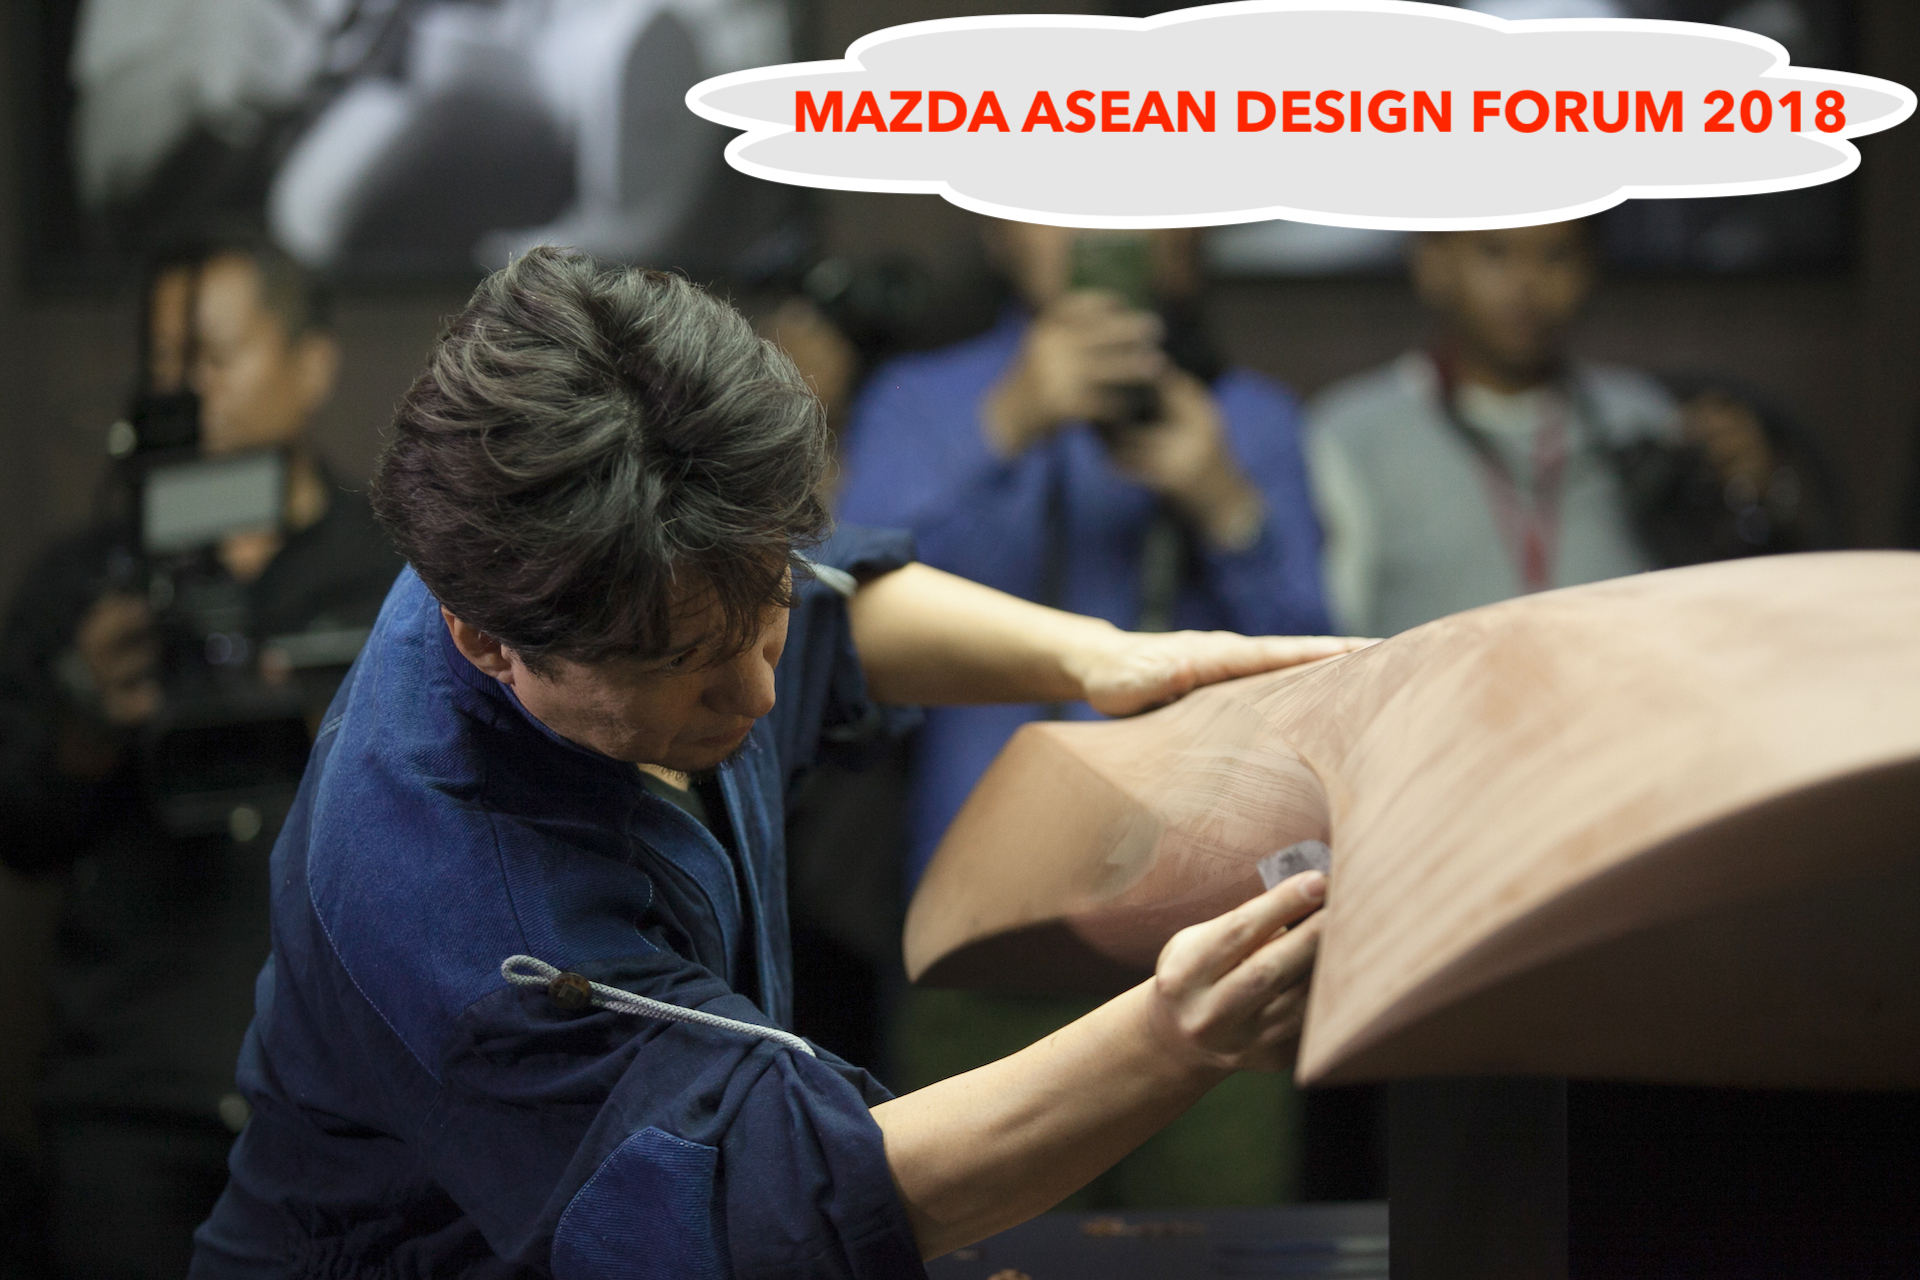 มาสด้าโชว์แนวทางการออกแบบจัดงาน DESIGN FORUM เผยโฉมรถต้นแบบเจนเนอเรชั่นใหม่เป็นครั้งแรกในอาเซียน / Mazda exhibits design vision, unveils next-gen concept vehicles for the first time in ASEAN